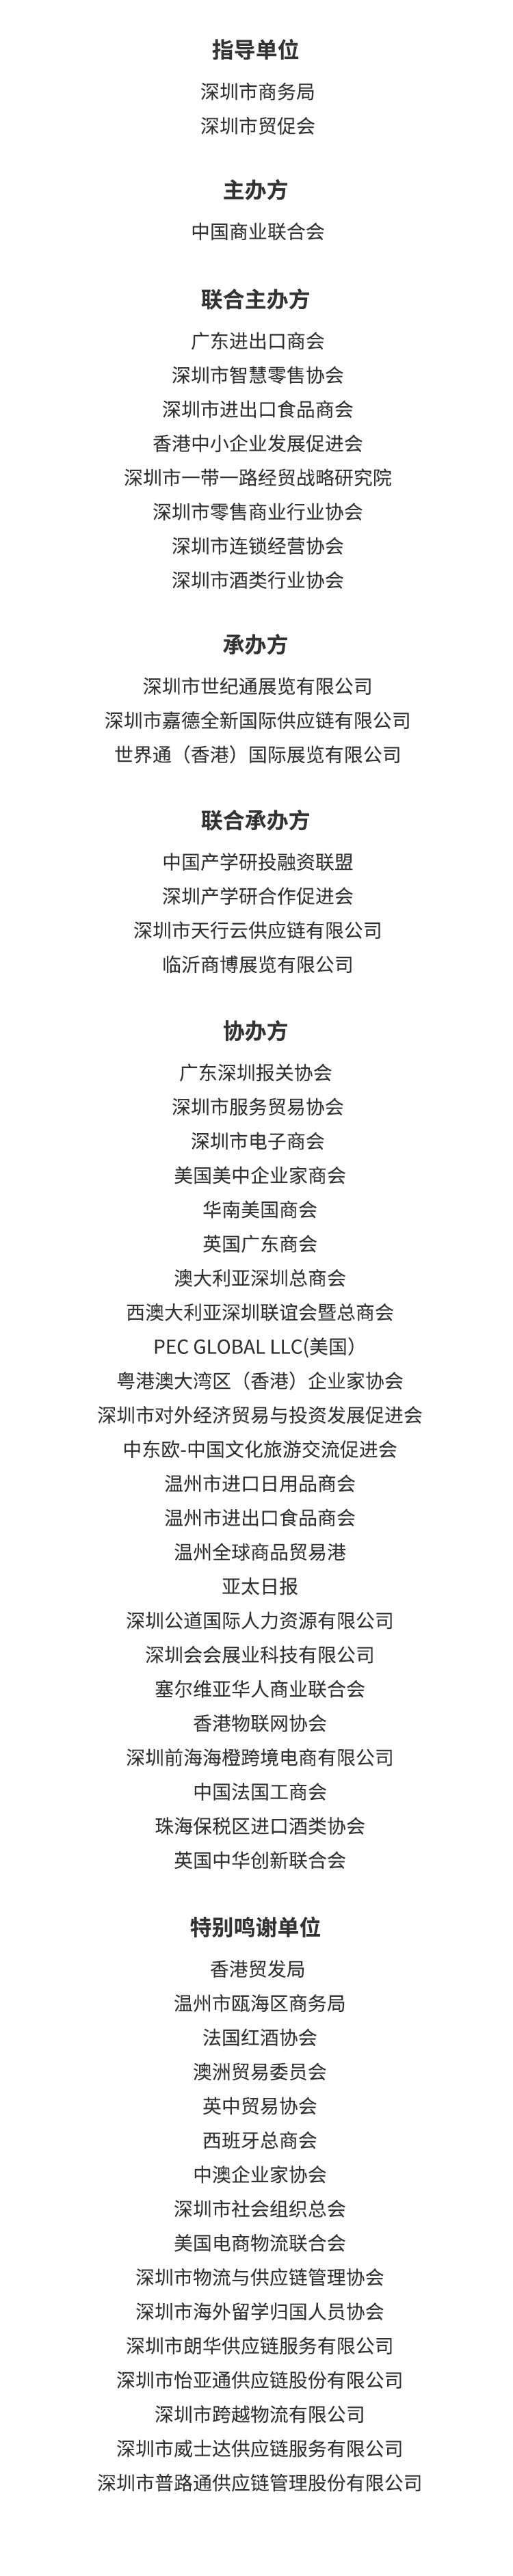 深圳国际进口消费品交易会暨全球防疫物资交易专区